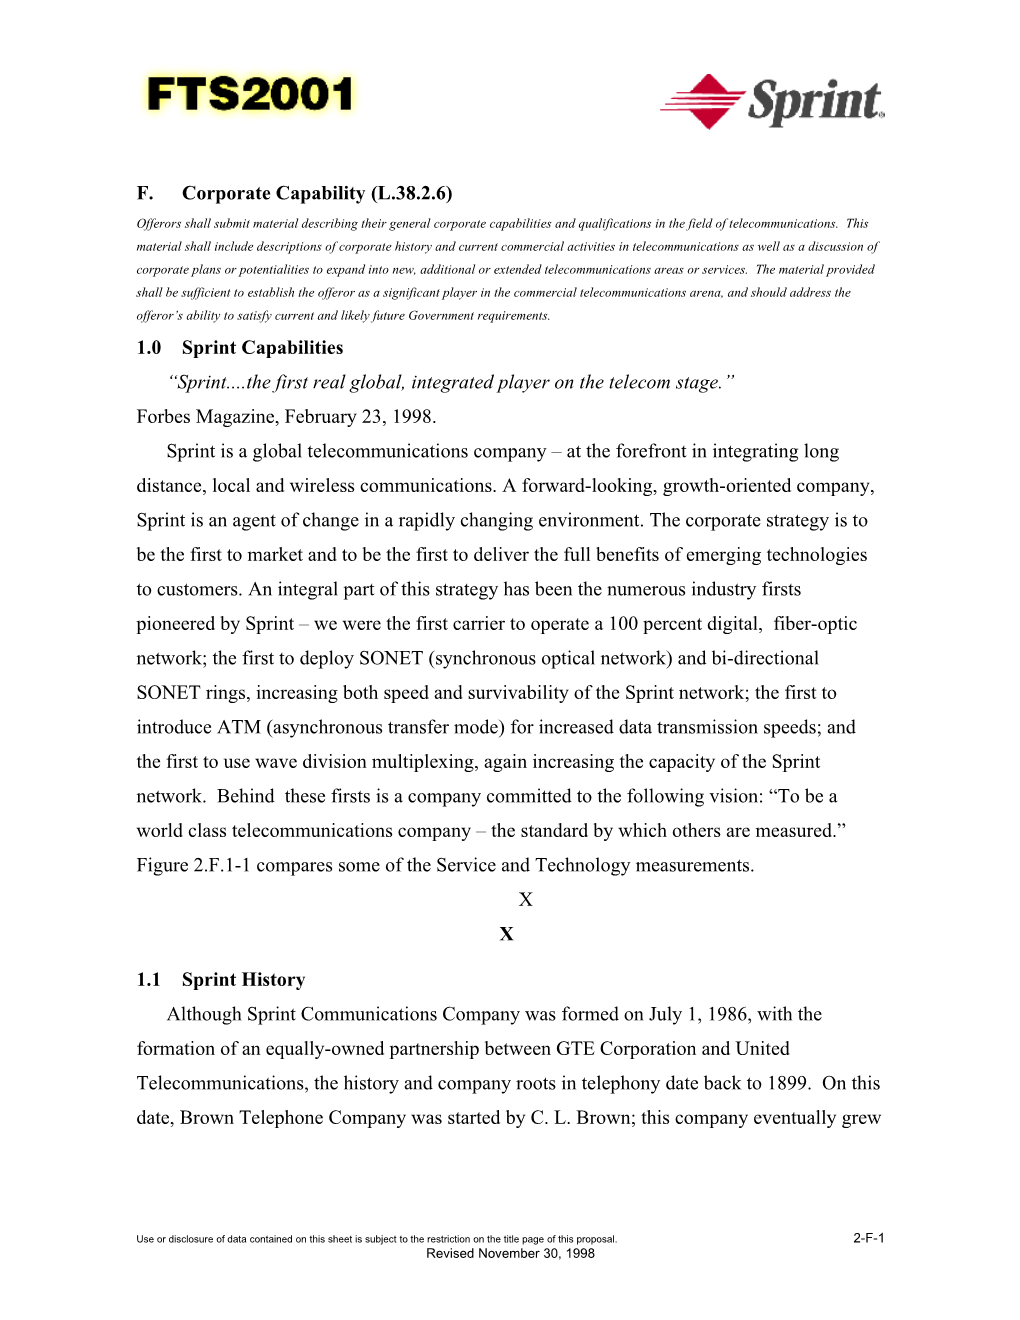 F.Corporate Capability (L.38.2.6)